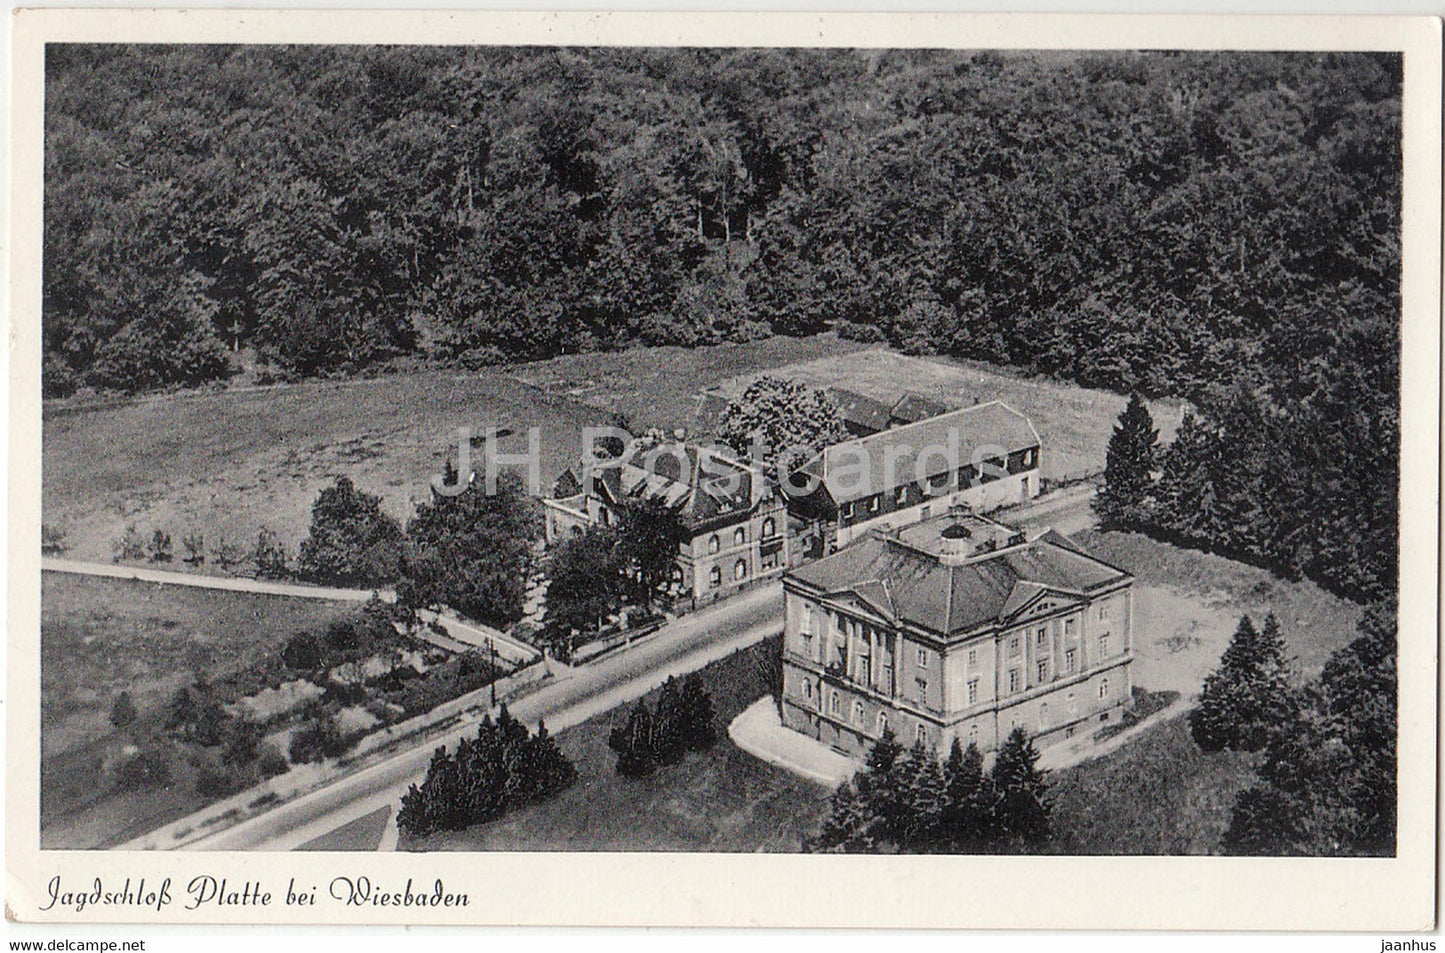 Jagdschloss Platte bei Wiesbaden - castle - 31 - 1954 - Germany - used - JH Postcards